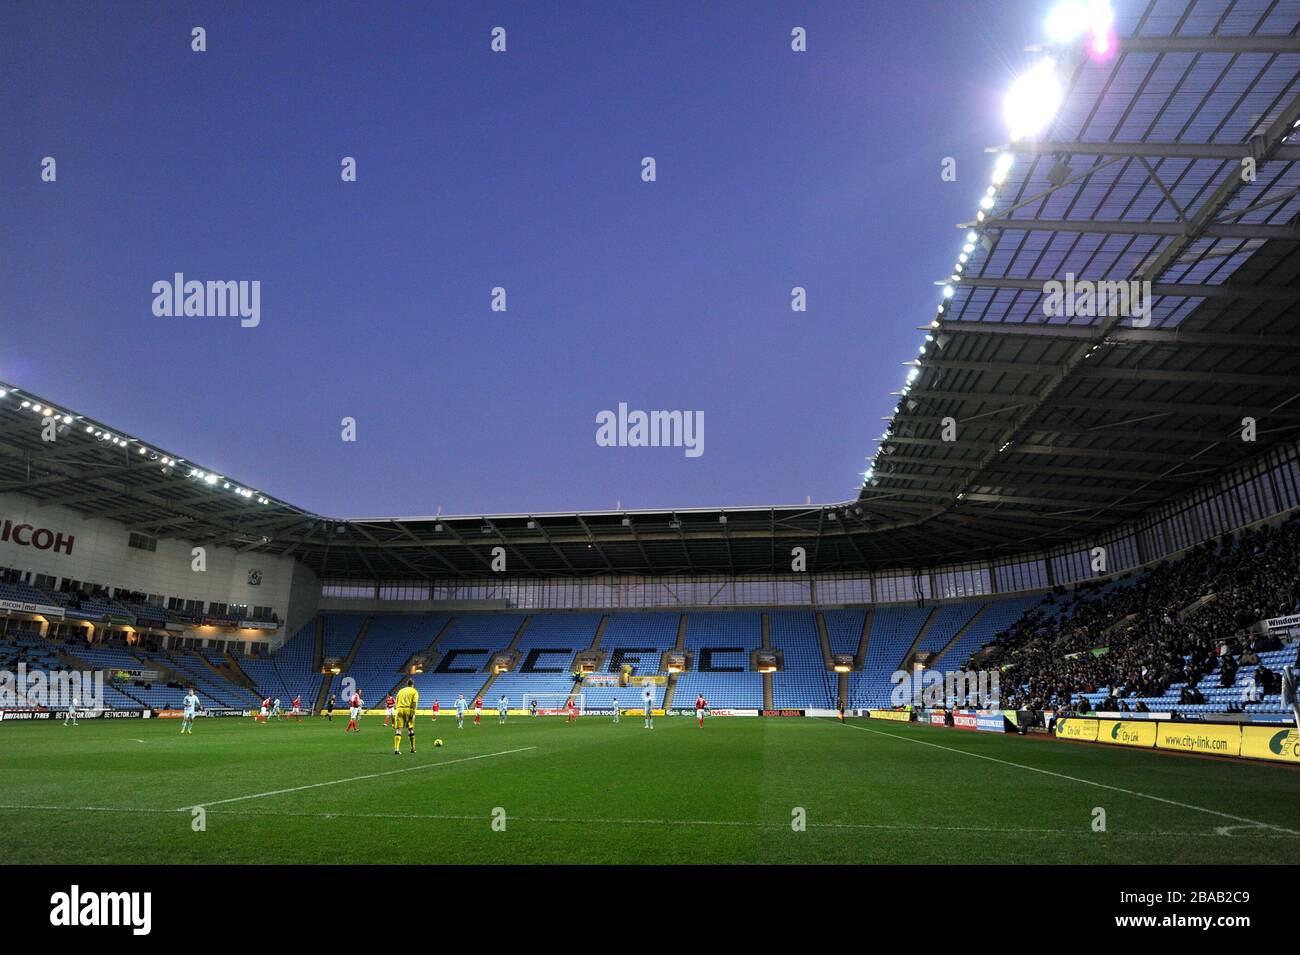 Une vue générale de l'action de match à la Ricoh Arena, maison de Coventry City Banque D'Images